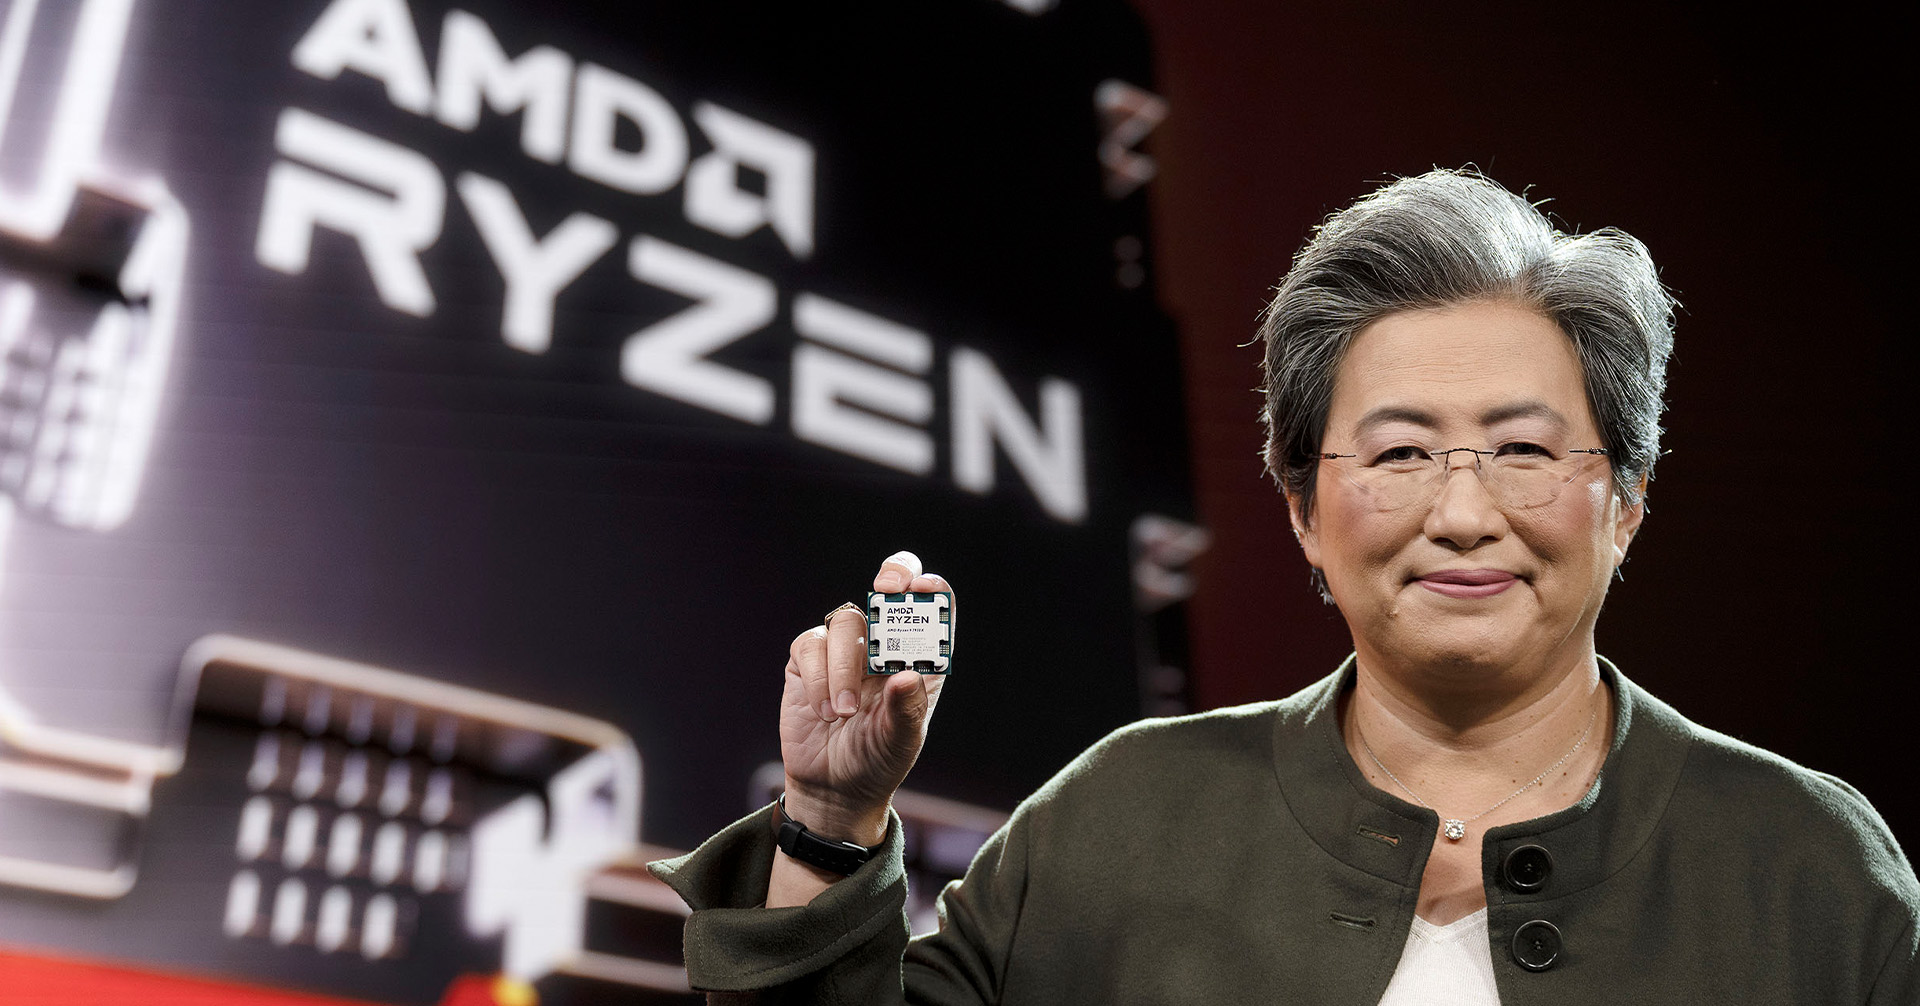 เปิดตัว AMD Ryzen 7000 ซีรีส์ CPU Desktop ขนาด 5nm เจ้าแรกของโลก บูสต์ความเร็วได้สูงสุด 5.7GHz